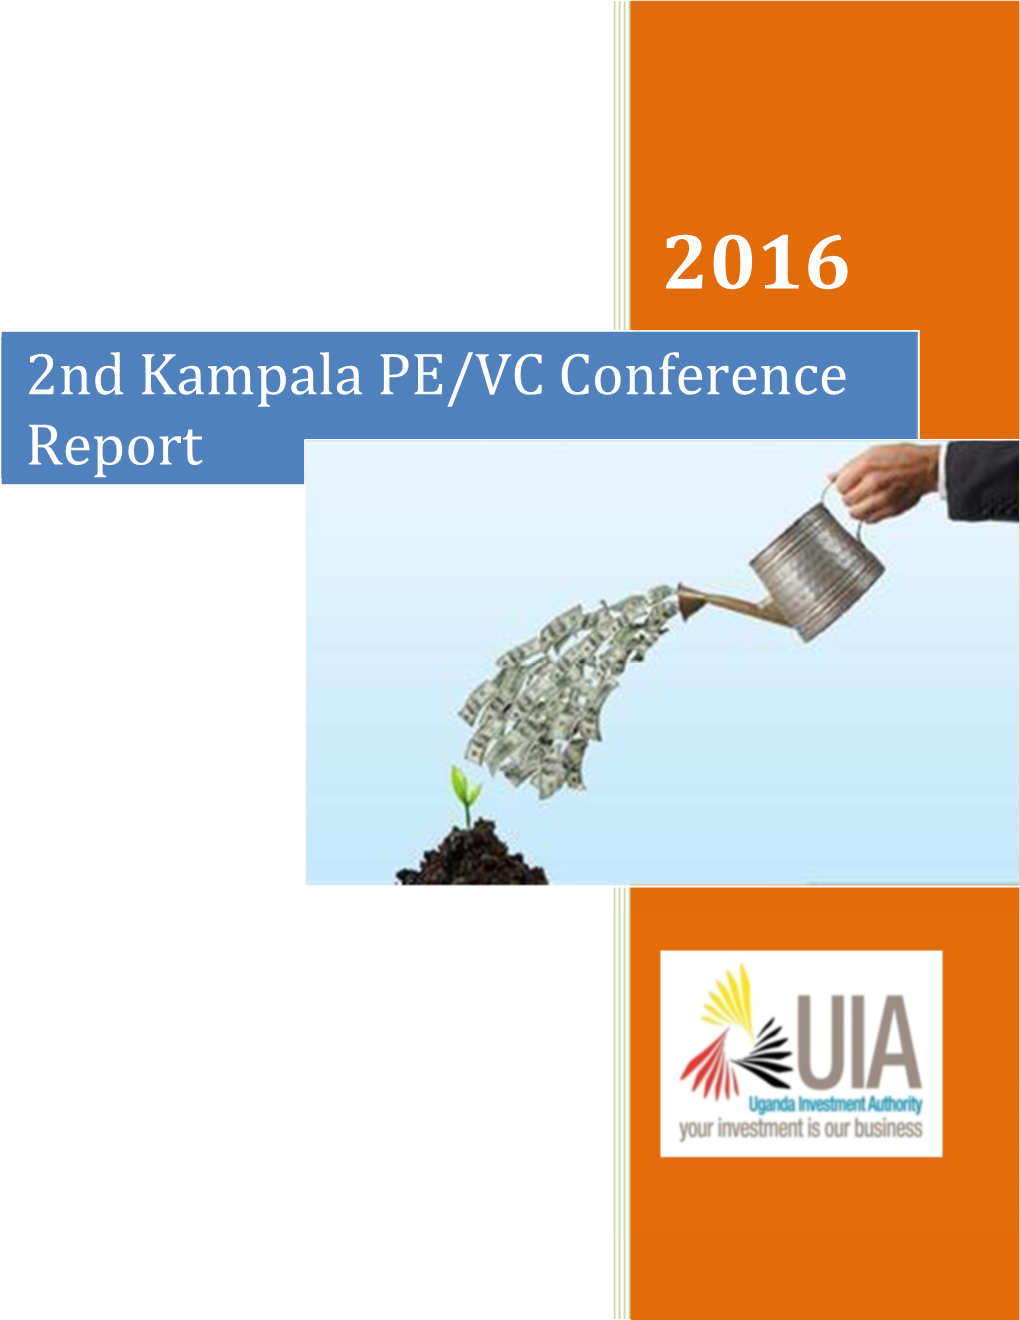 2Nd Kampala PE/VC Conference Report